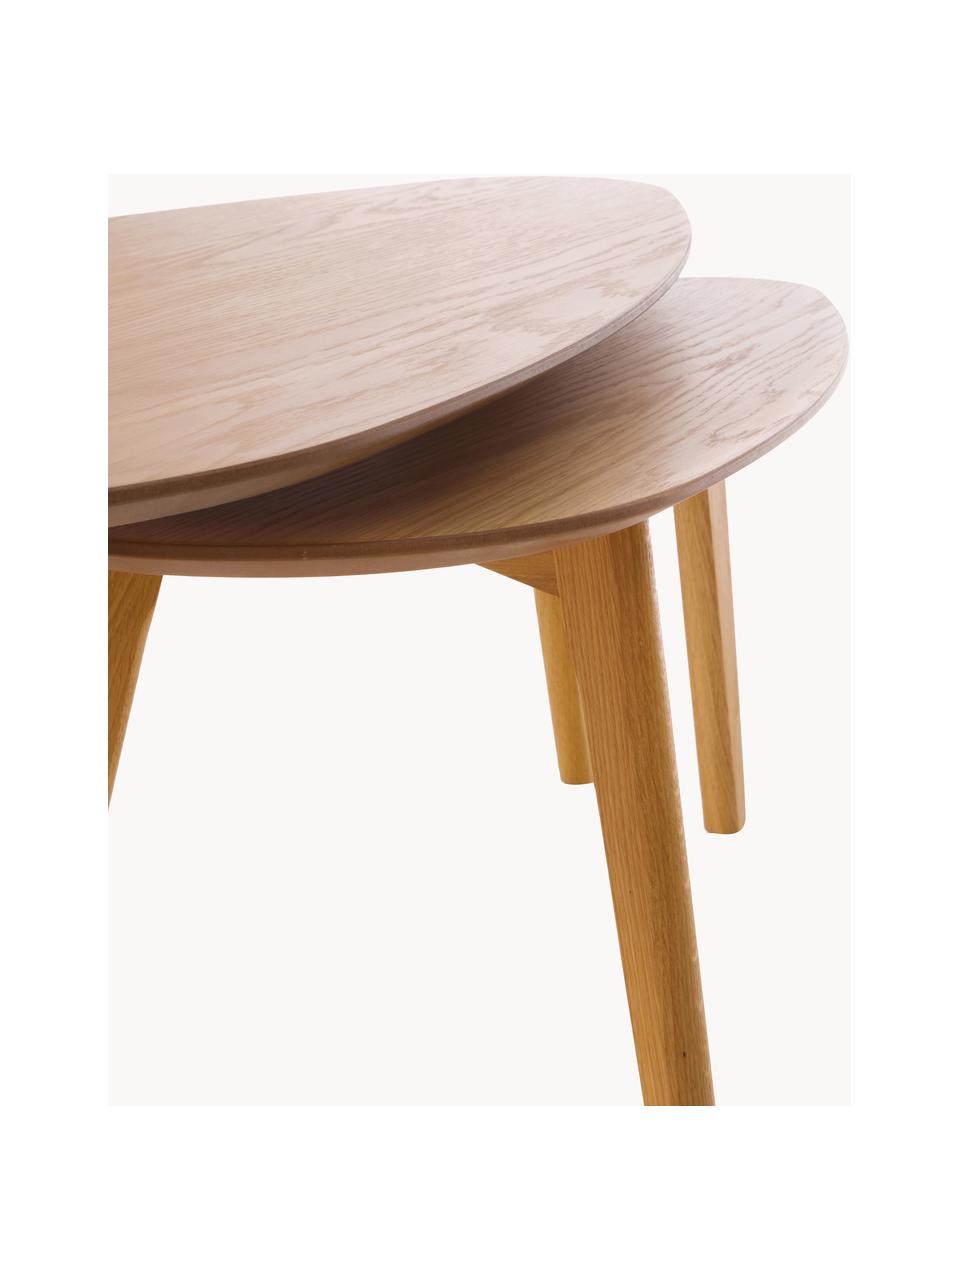 Súprava konferenčných stolíkov z dreva Bloom, 2 diely, Dubové drevo, Súprava s rôznymi veľkosťami